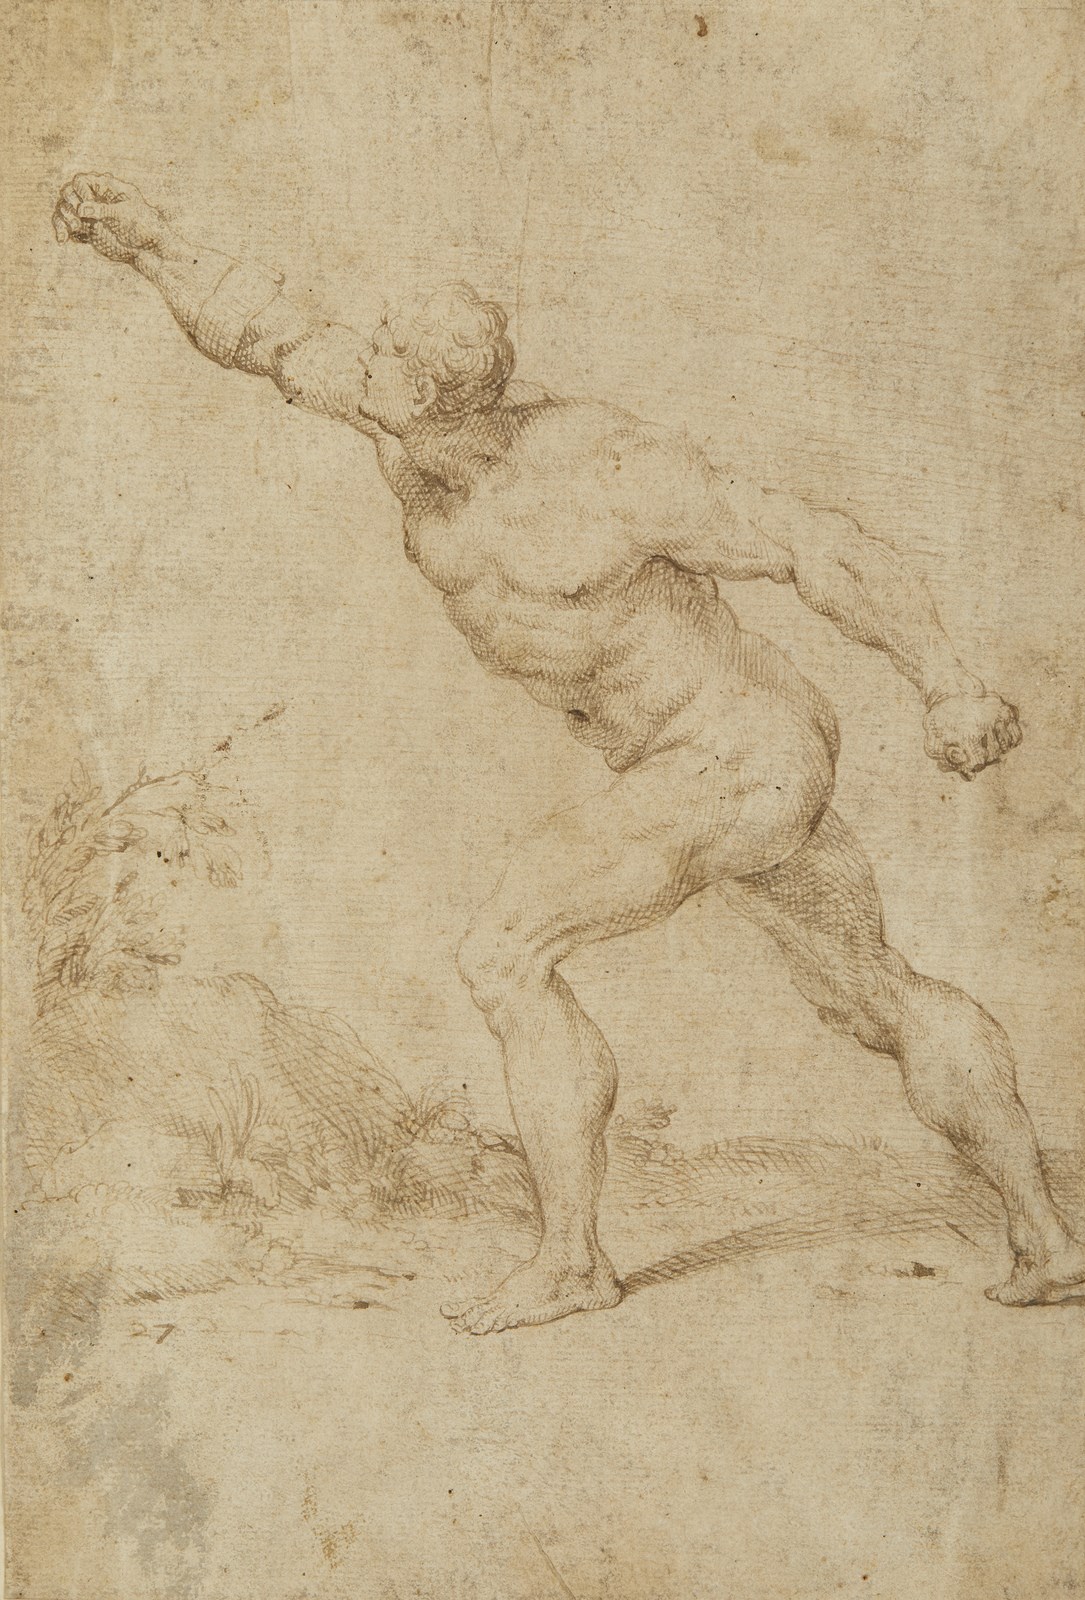 Borghese Gladiator ( Artista Del XVII Secolo)